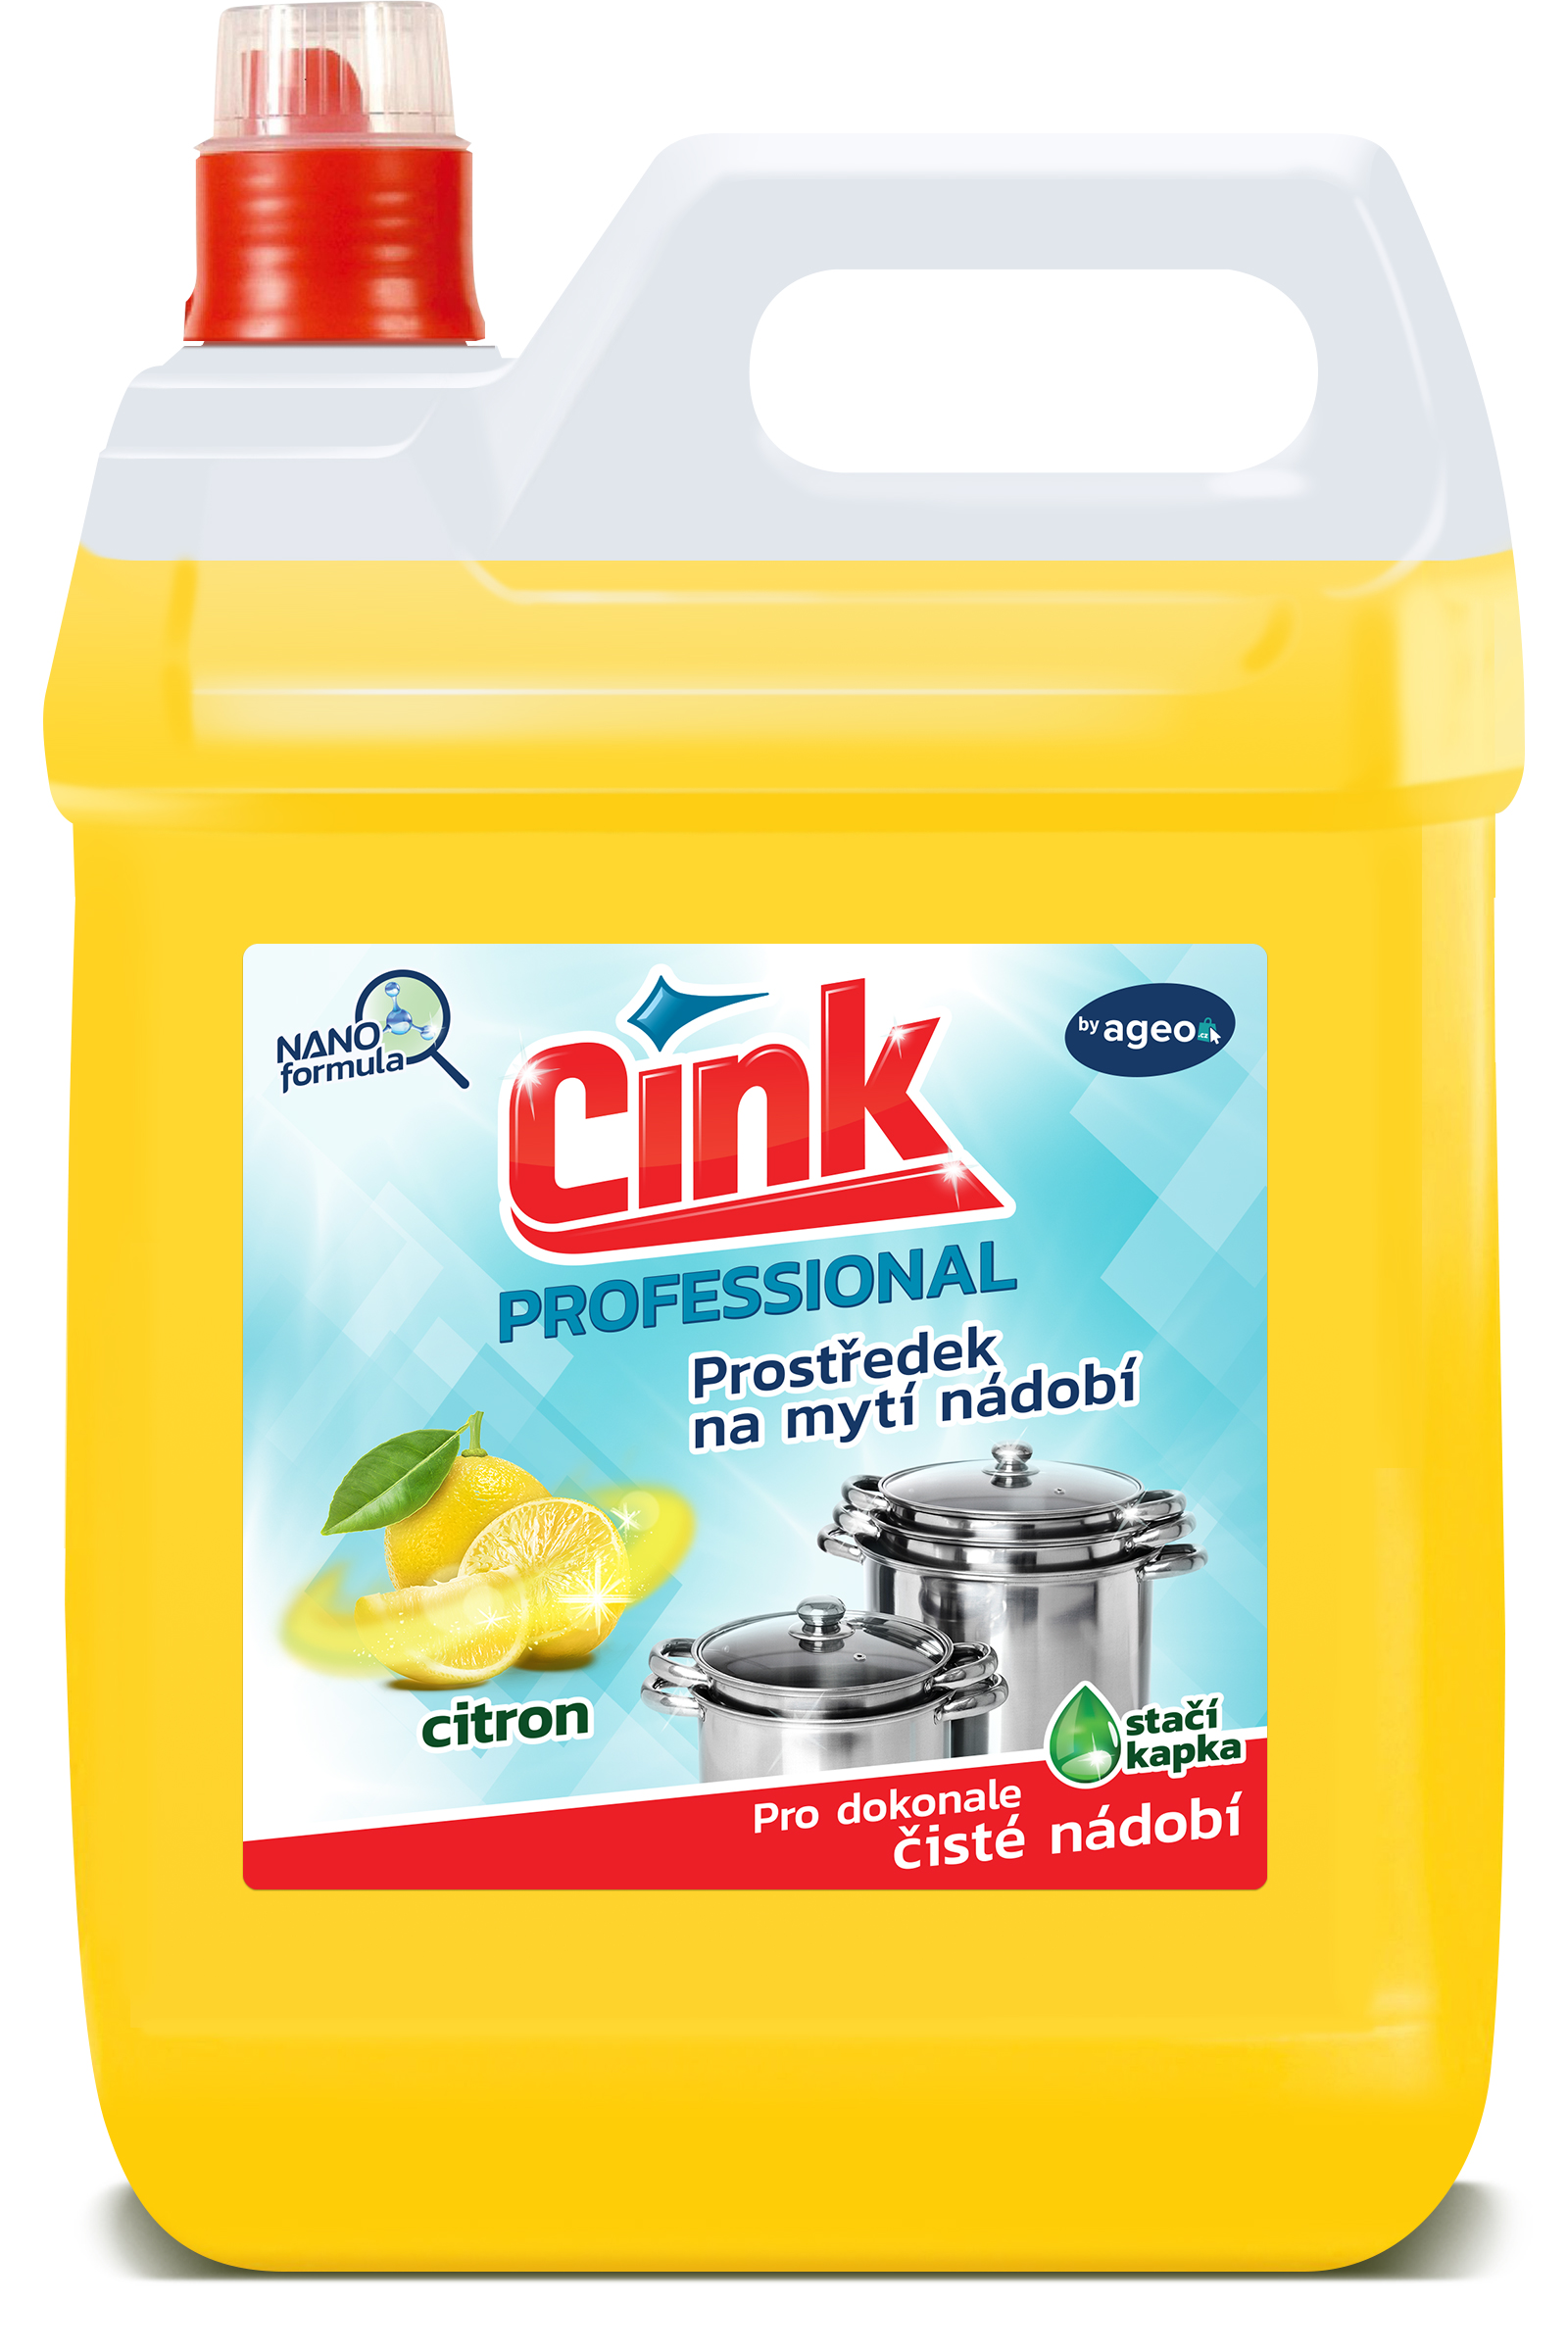 Cink Citron prostředek na ruční mytí nádobí 5 L